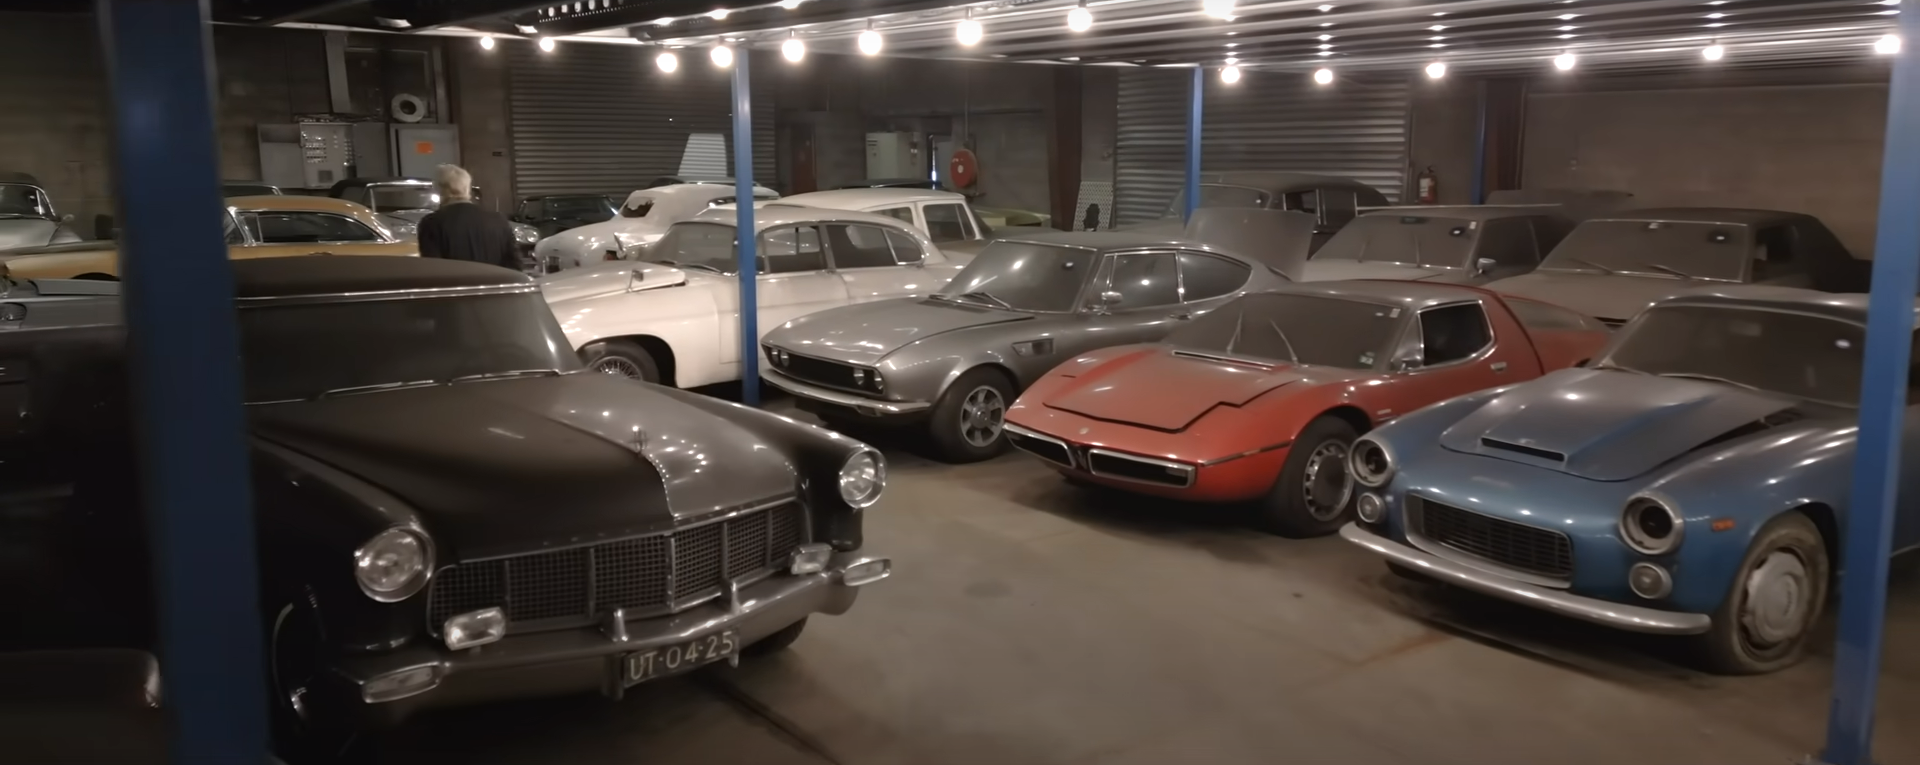 , Une importante collection de voitures découverte dans une église et des hangars aux Pays-Bas